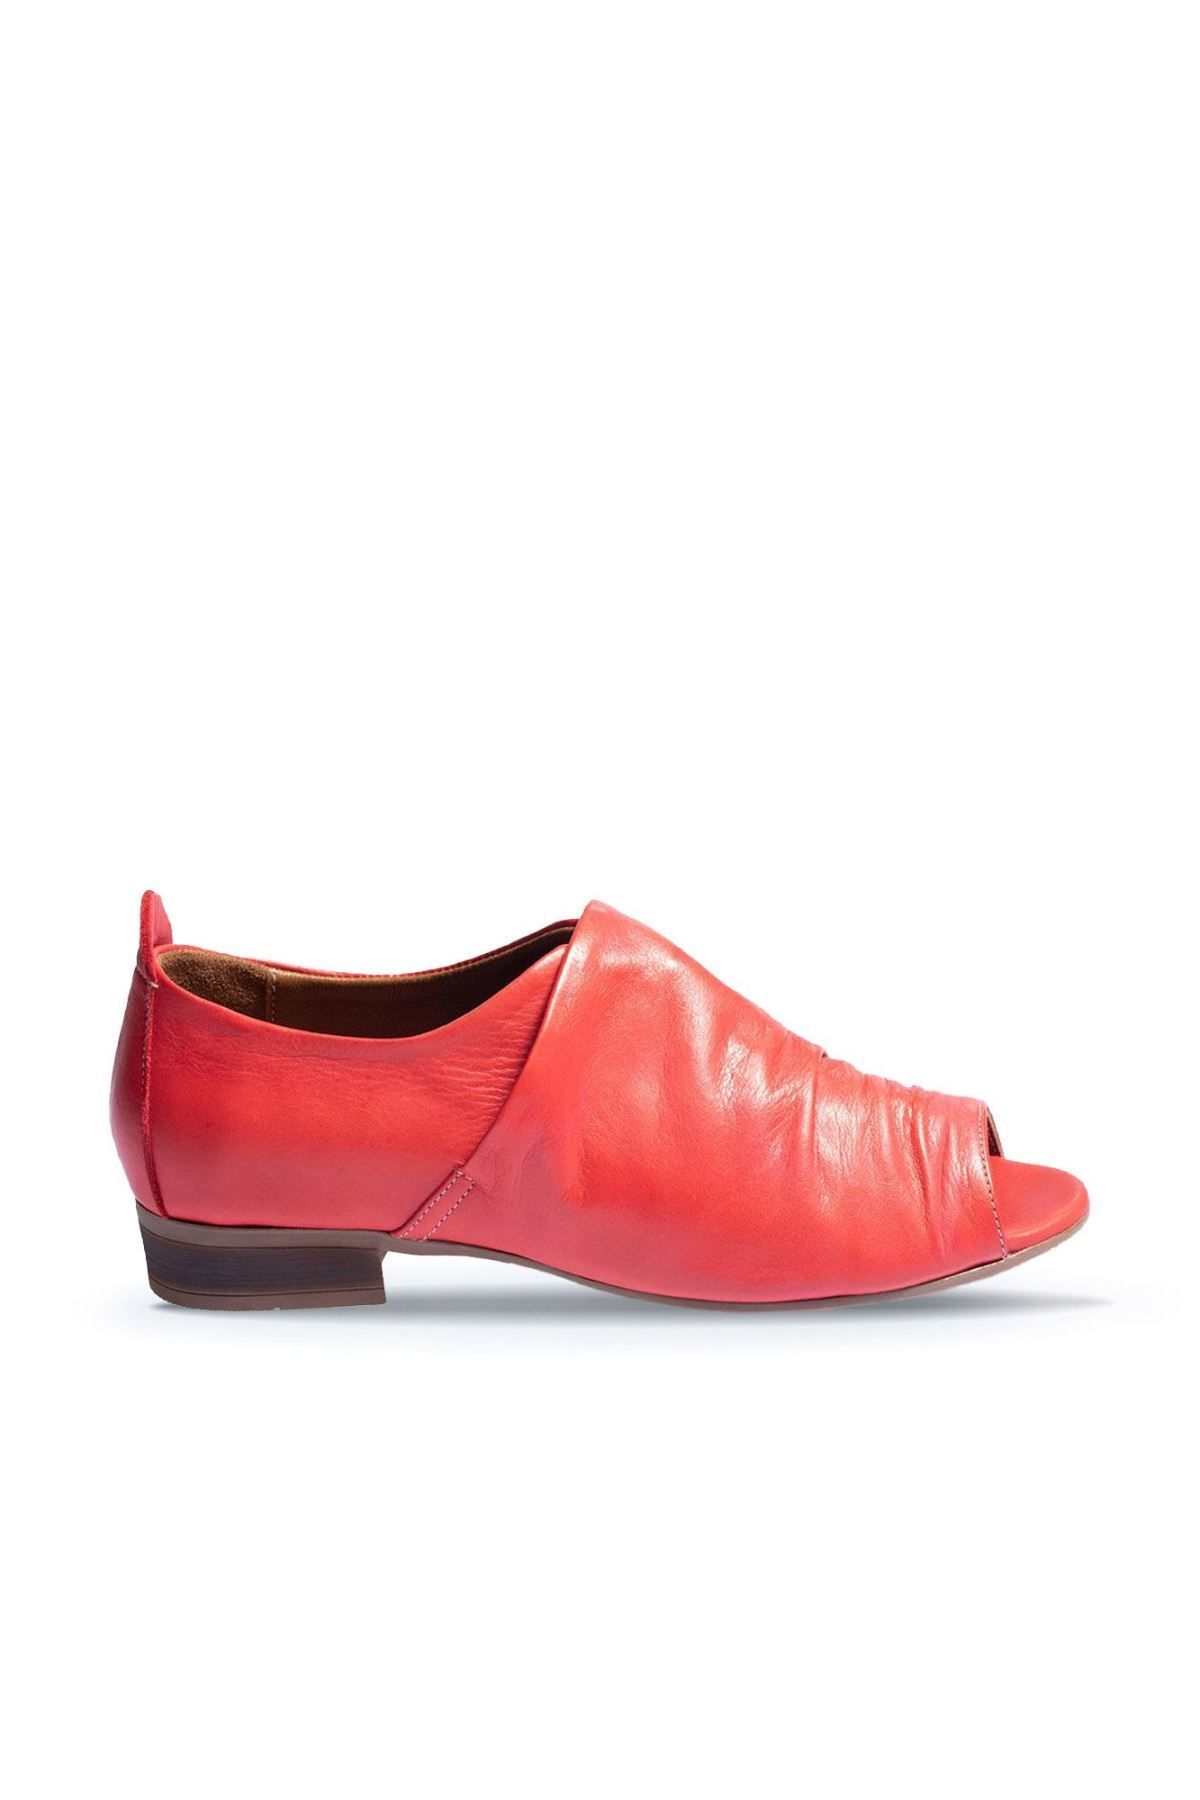 BUENO Shoes Kırmızı Deri Kadın Az Topuklu Ayakkabı